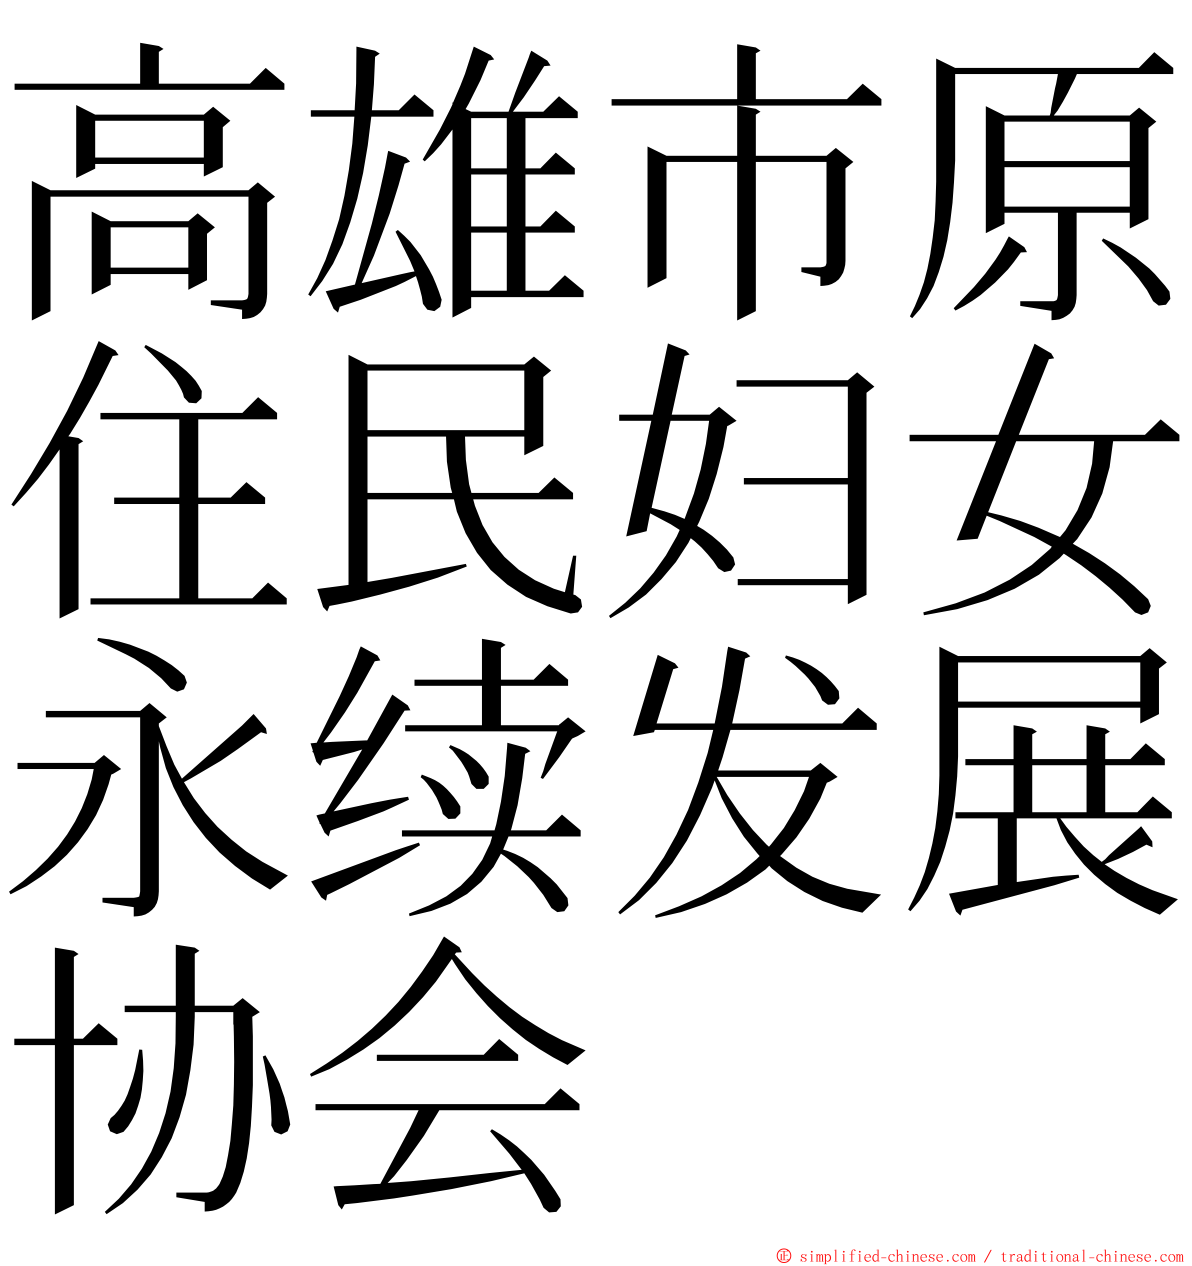 高雄市原住民妇女永续发展协会 ming font